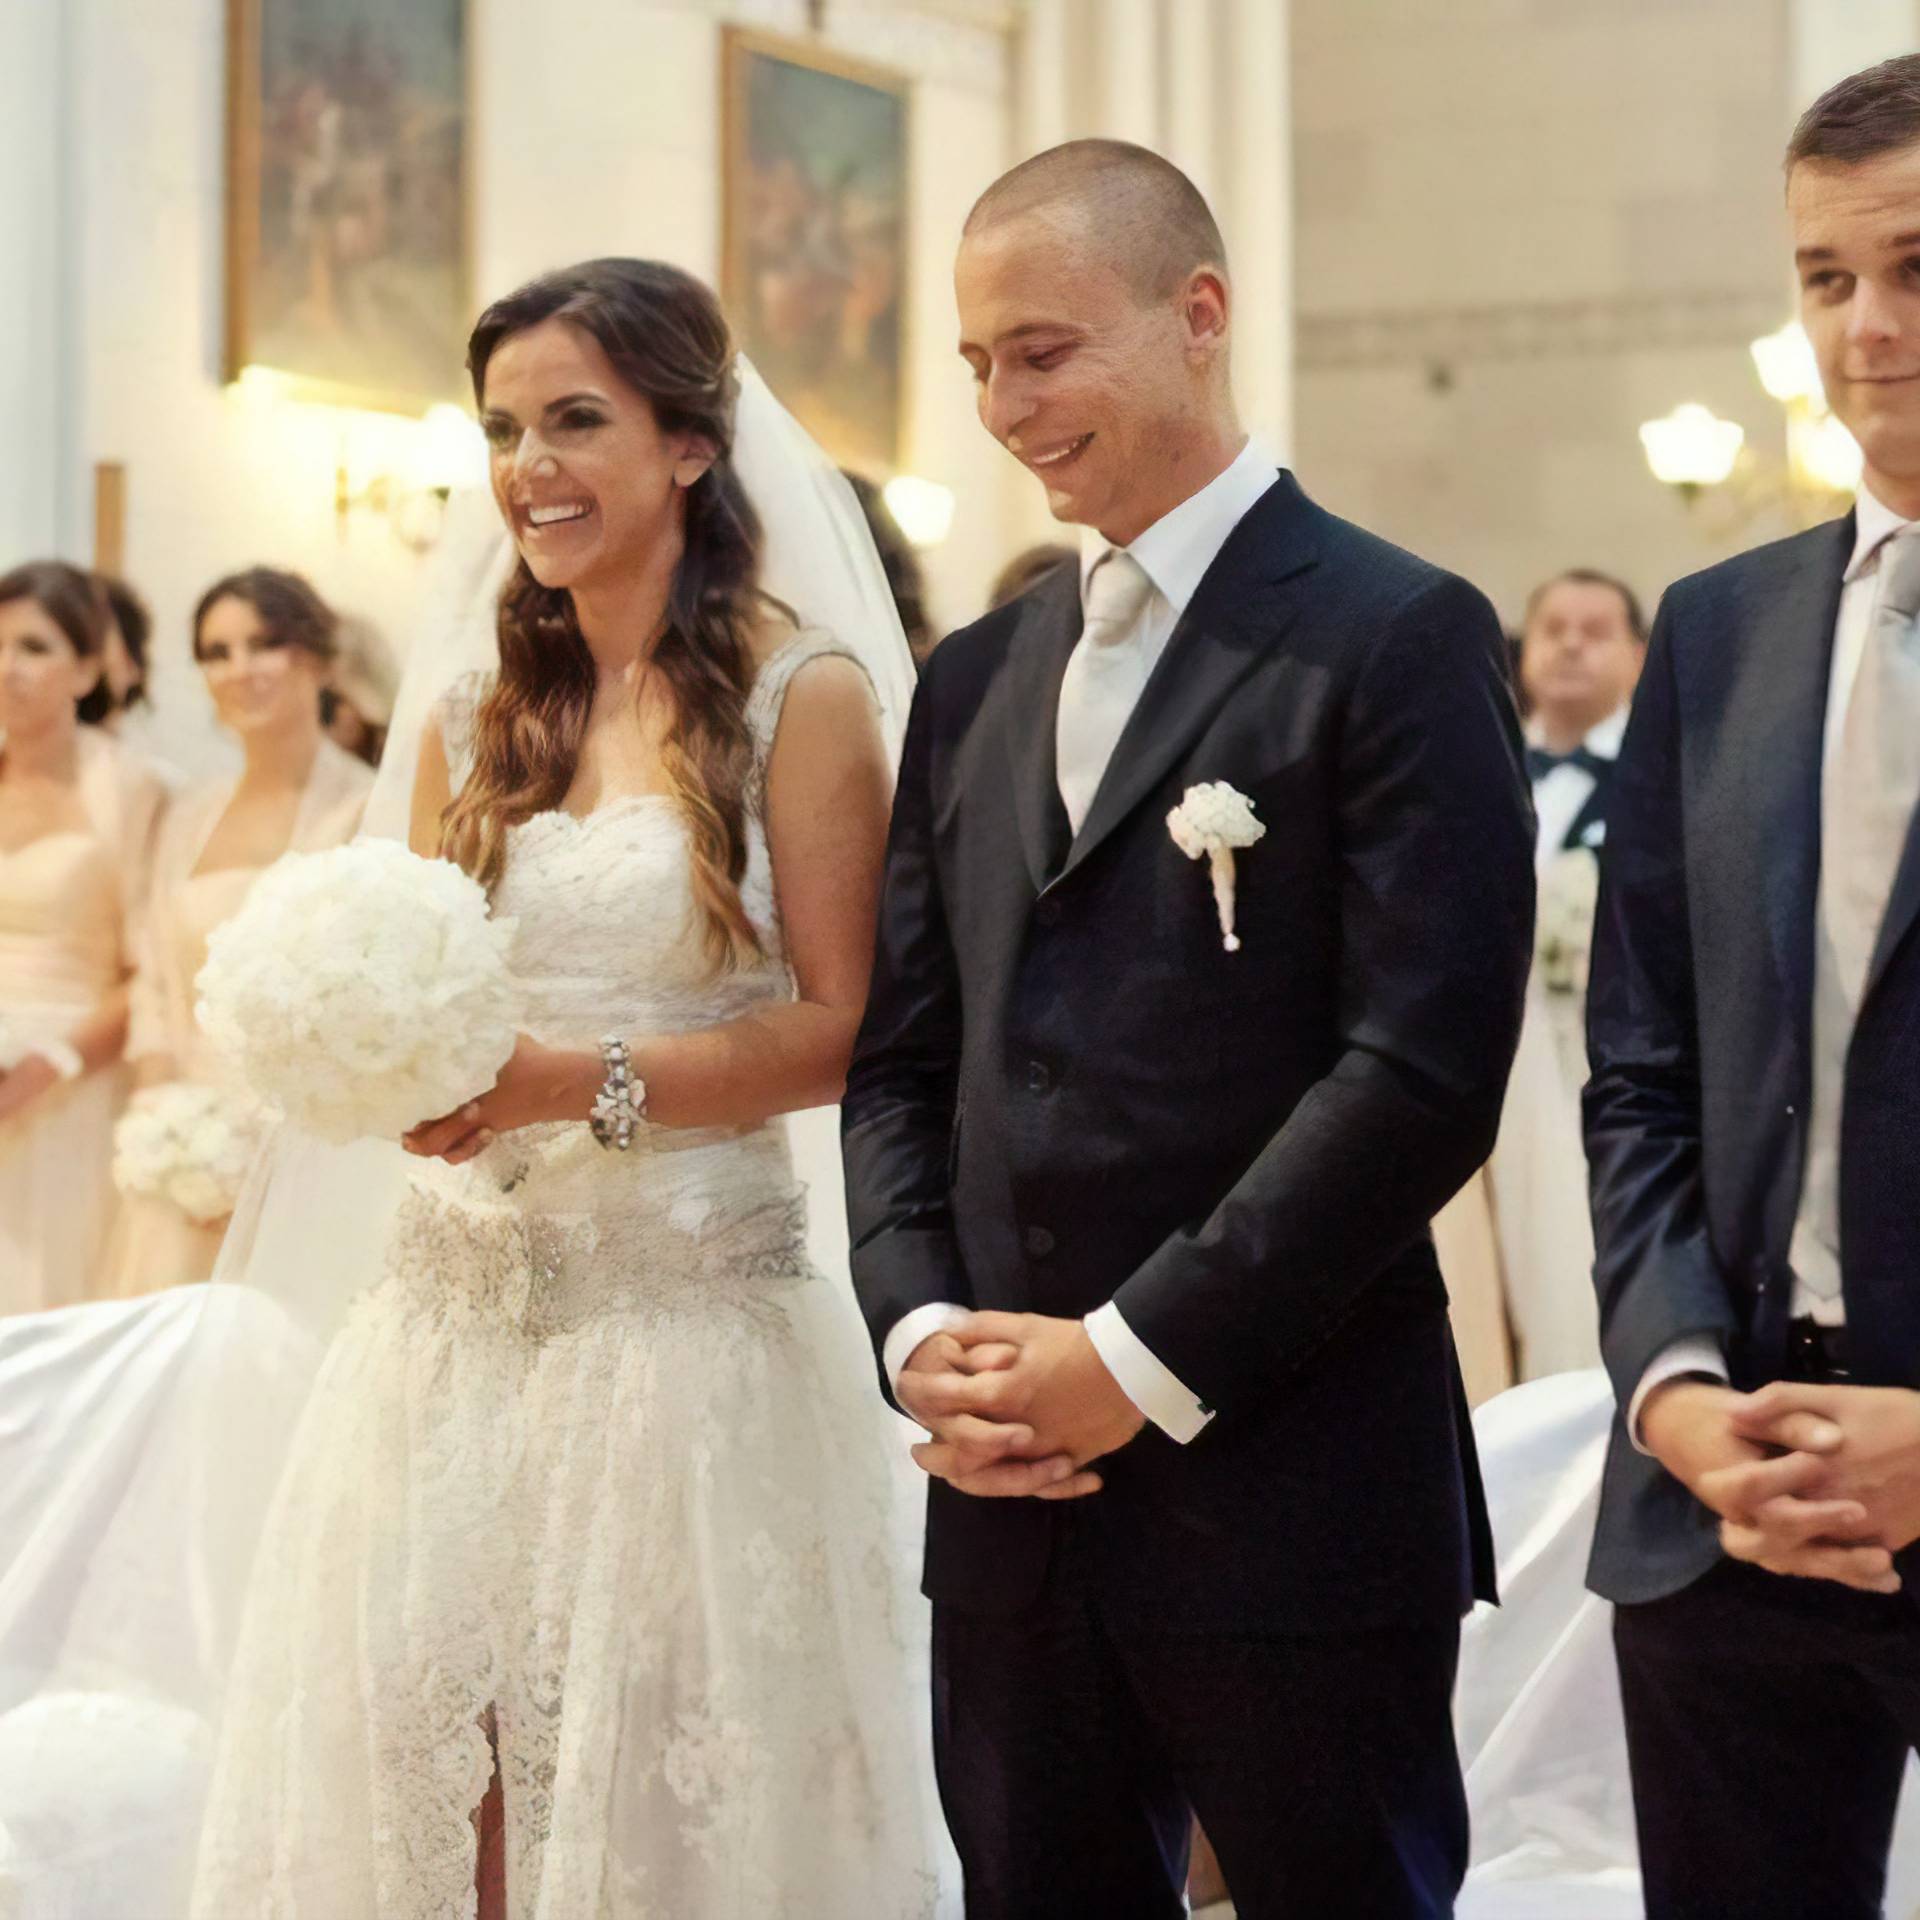 Marić je sinu platio luksuznu svadbu: Potrošili 1,5 mil. kuna